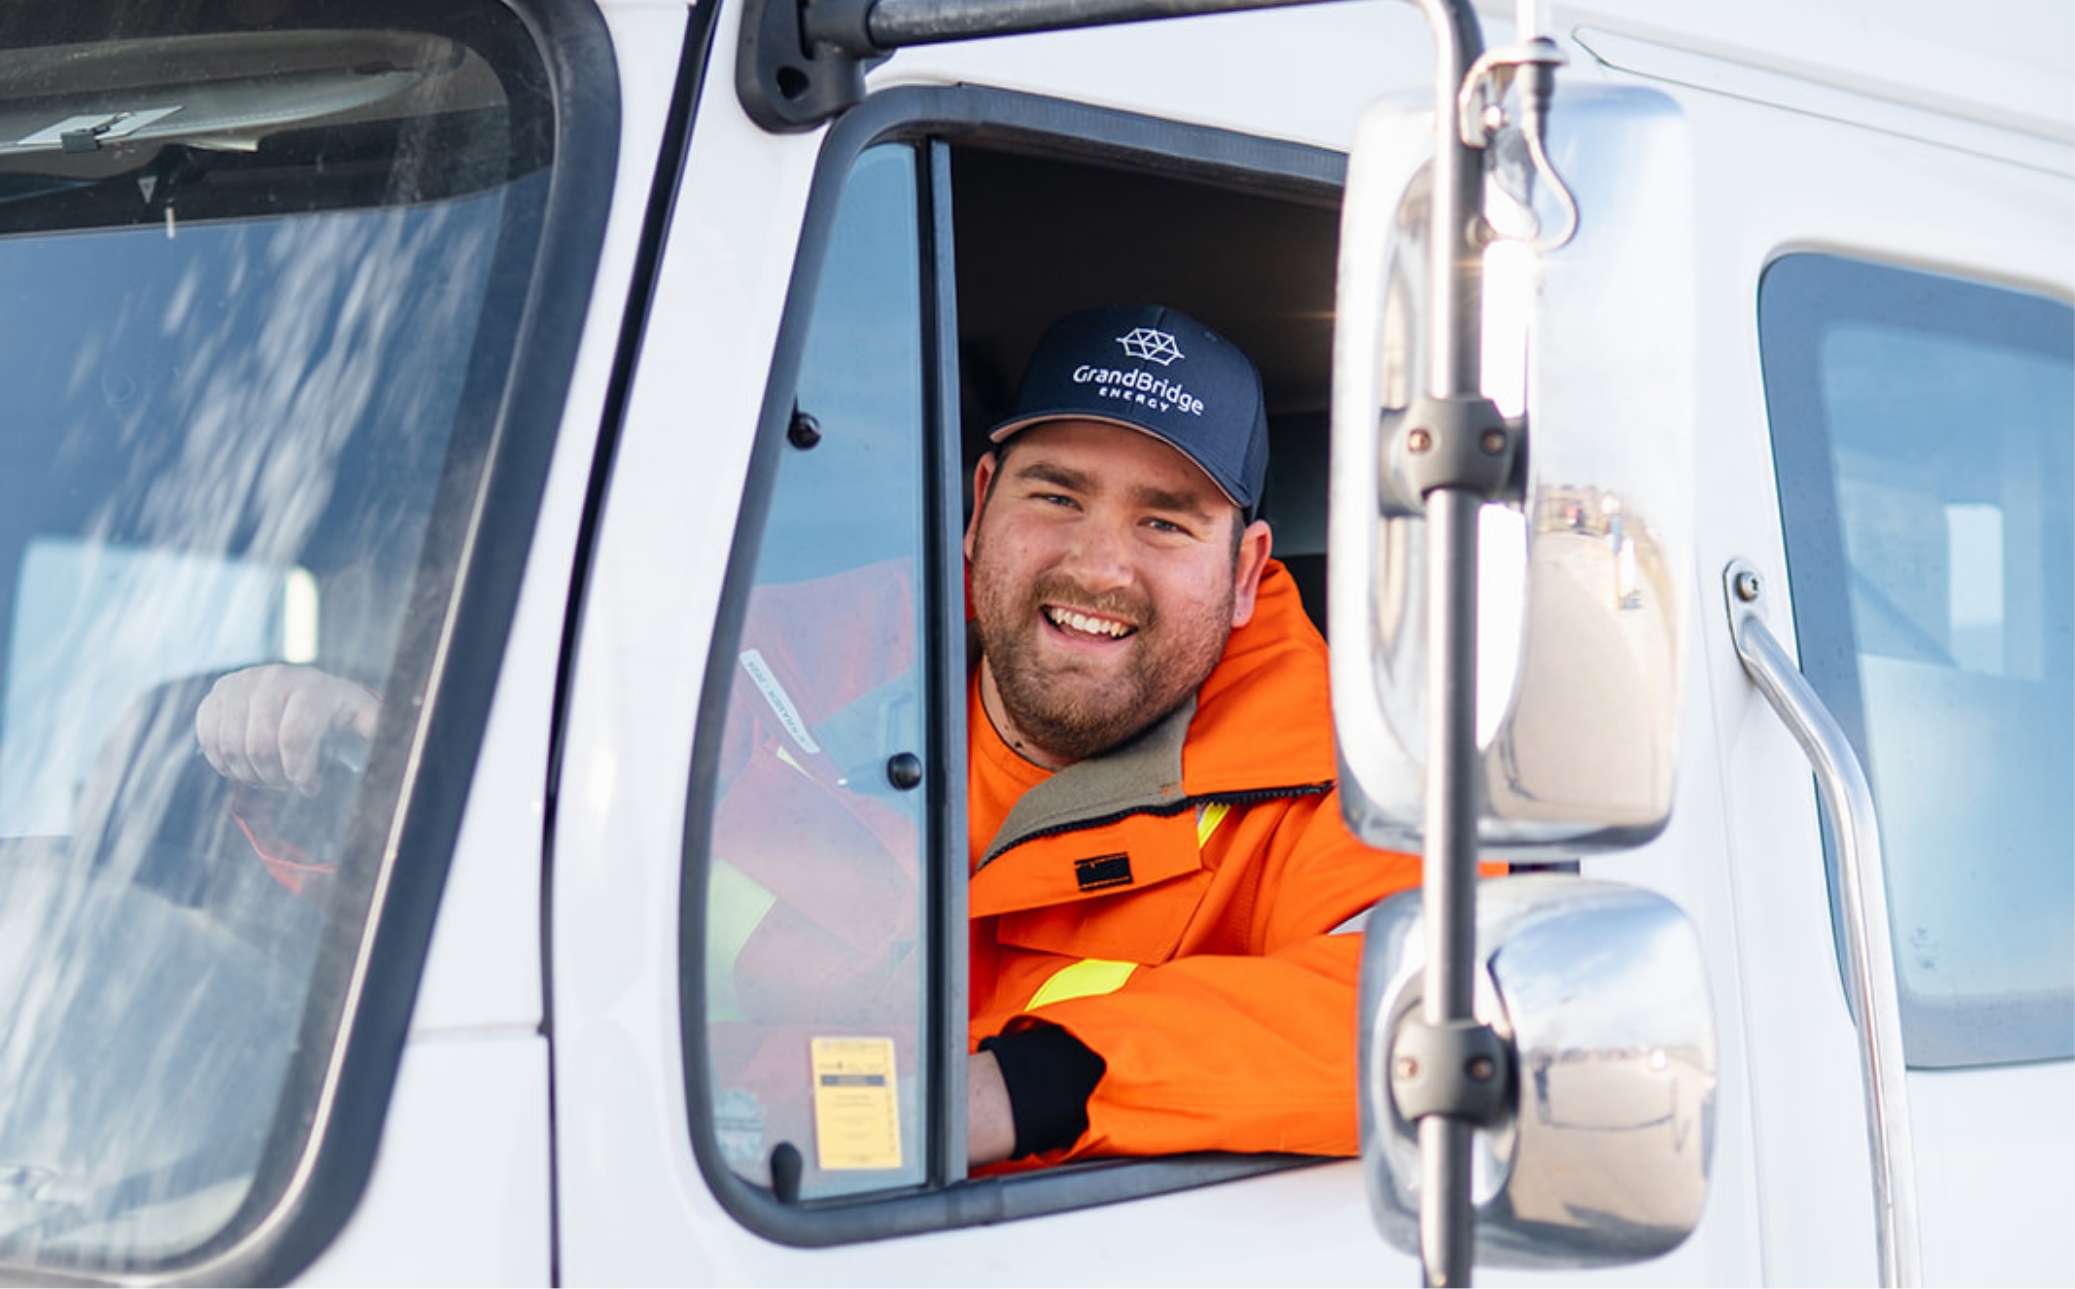 GrandBridge Energy powerline technician smiling while driving one of the trucks.